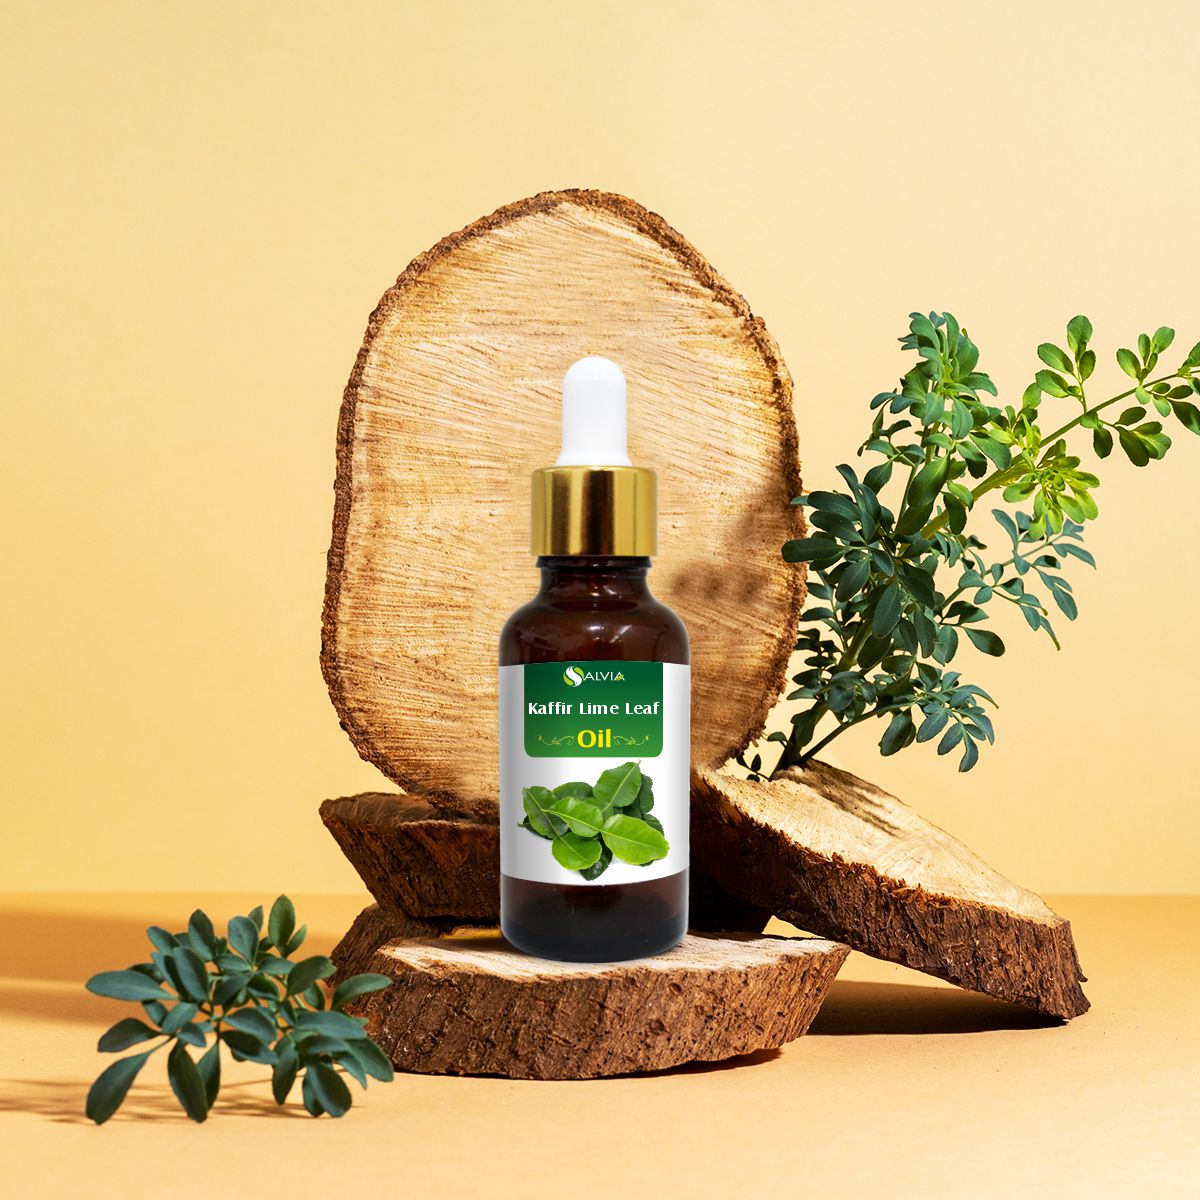 Salvia Natural Essential Oils,Hair Fall Kaffir Lime Leaf Oil (Citrus Hystrix) Natural Essential Oil